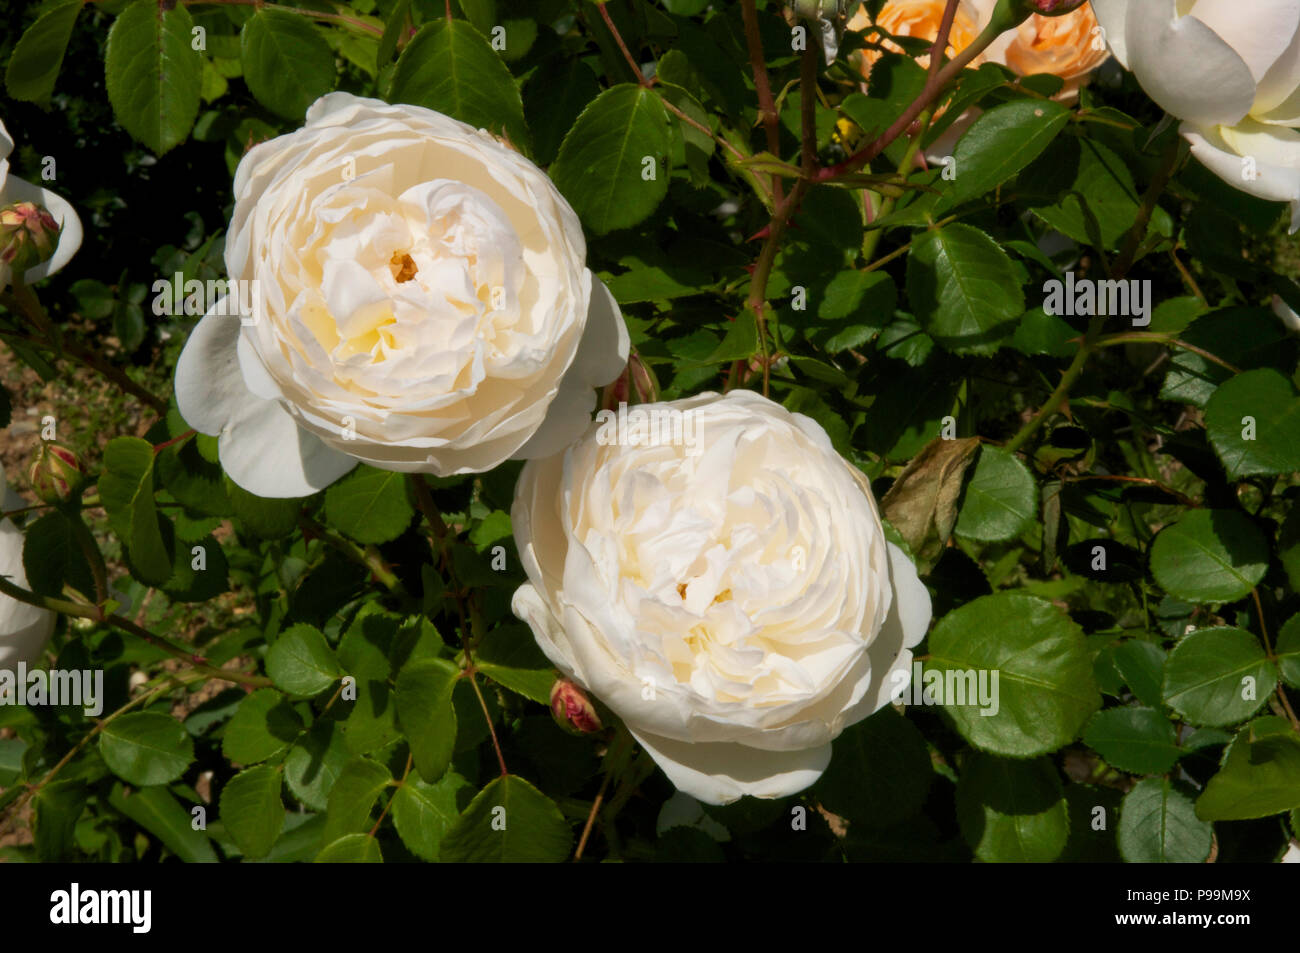 Cream double rose Stock Photo